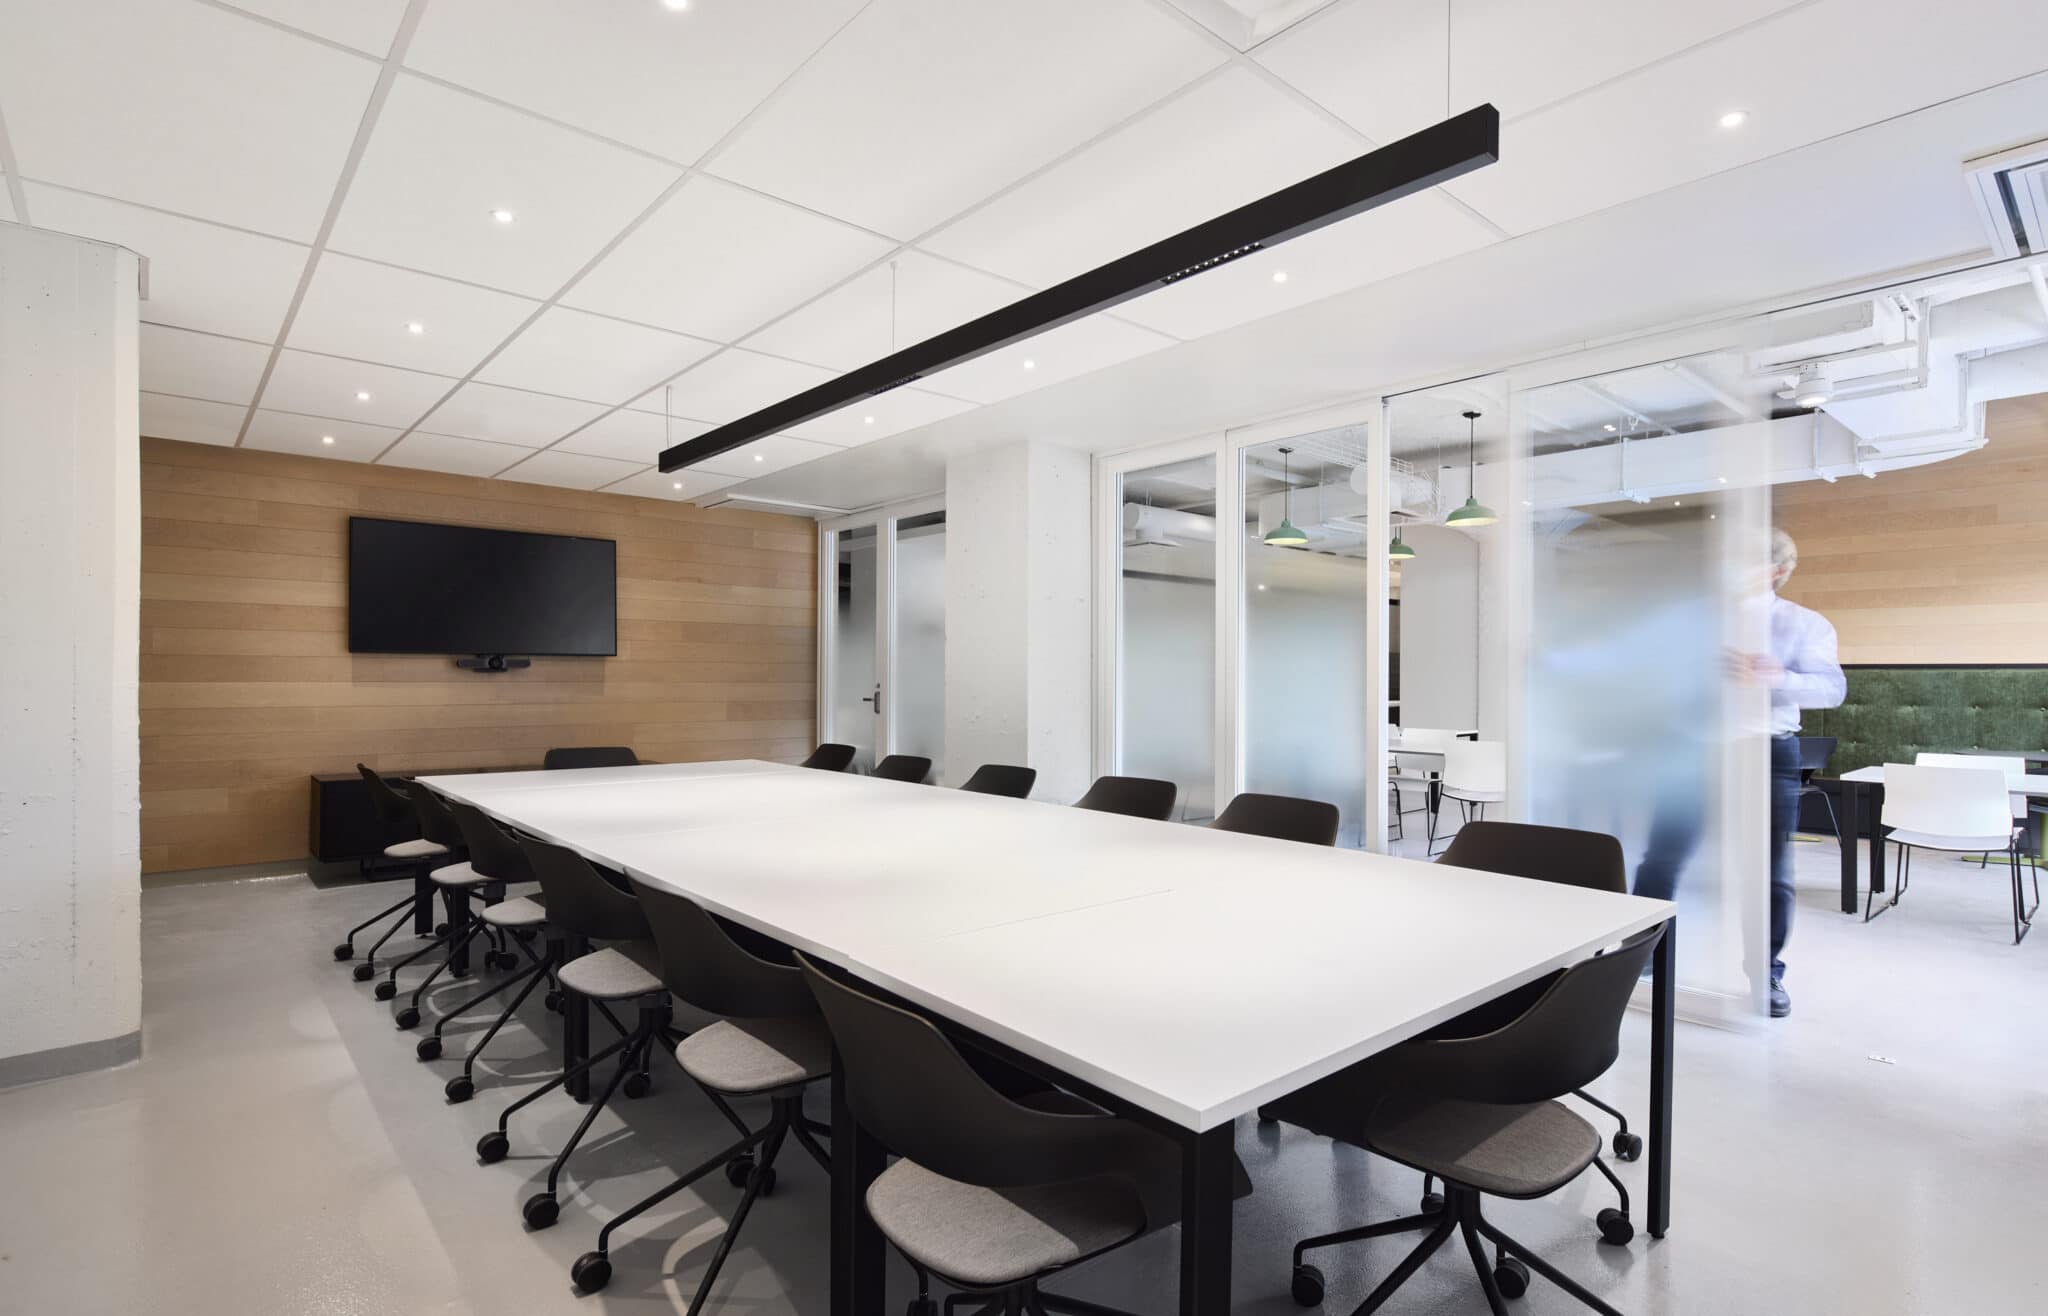 Salle agile au siège social de Morgan Schaffer à Montréal par VAD Designers d'espaces